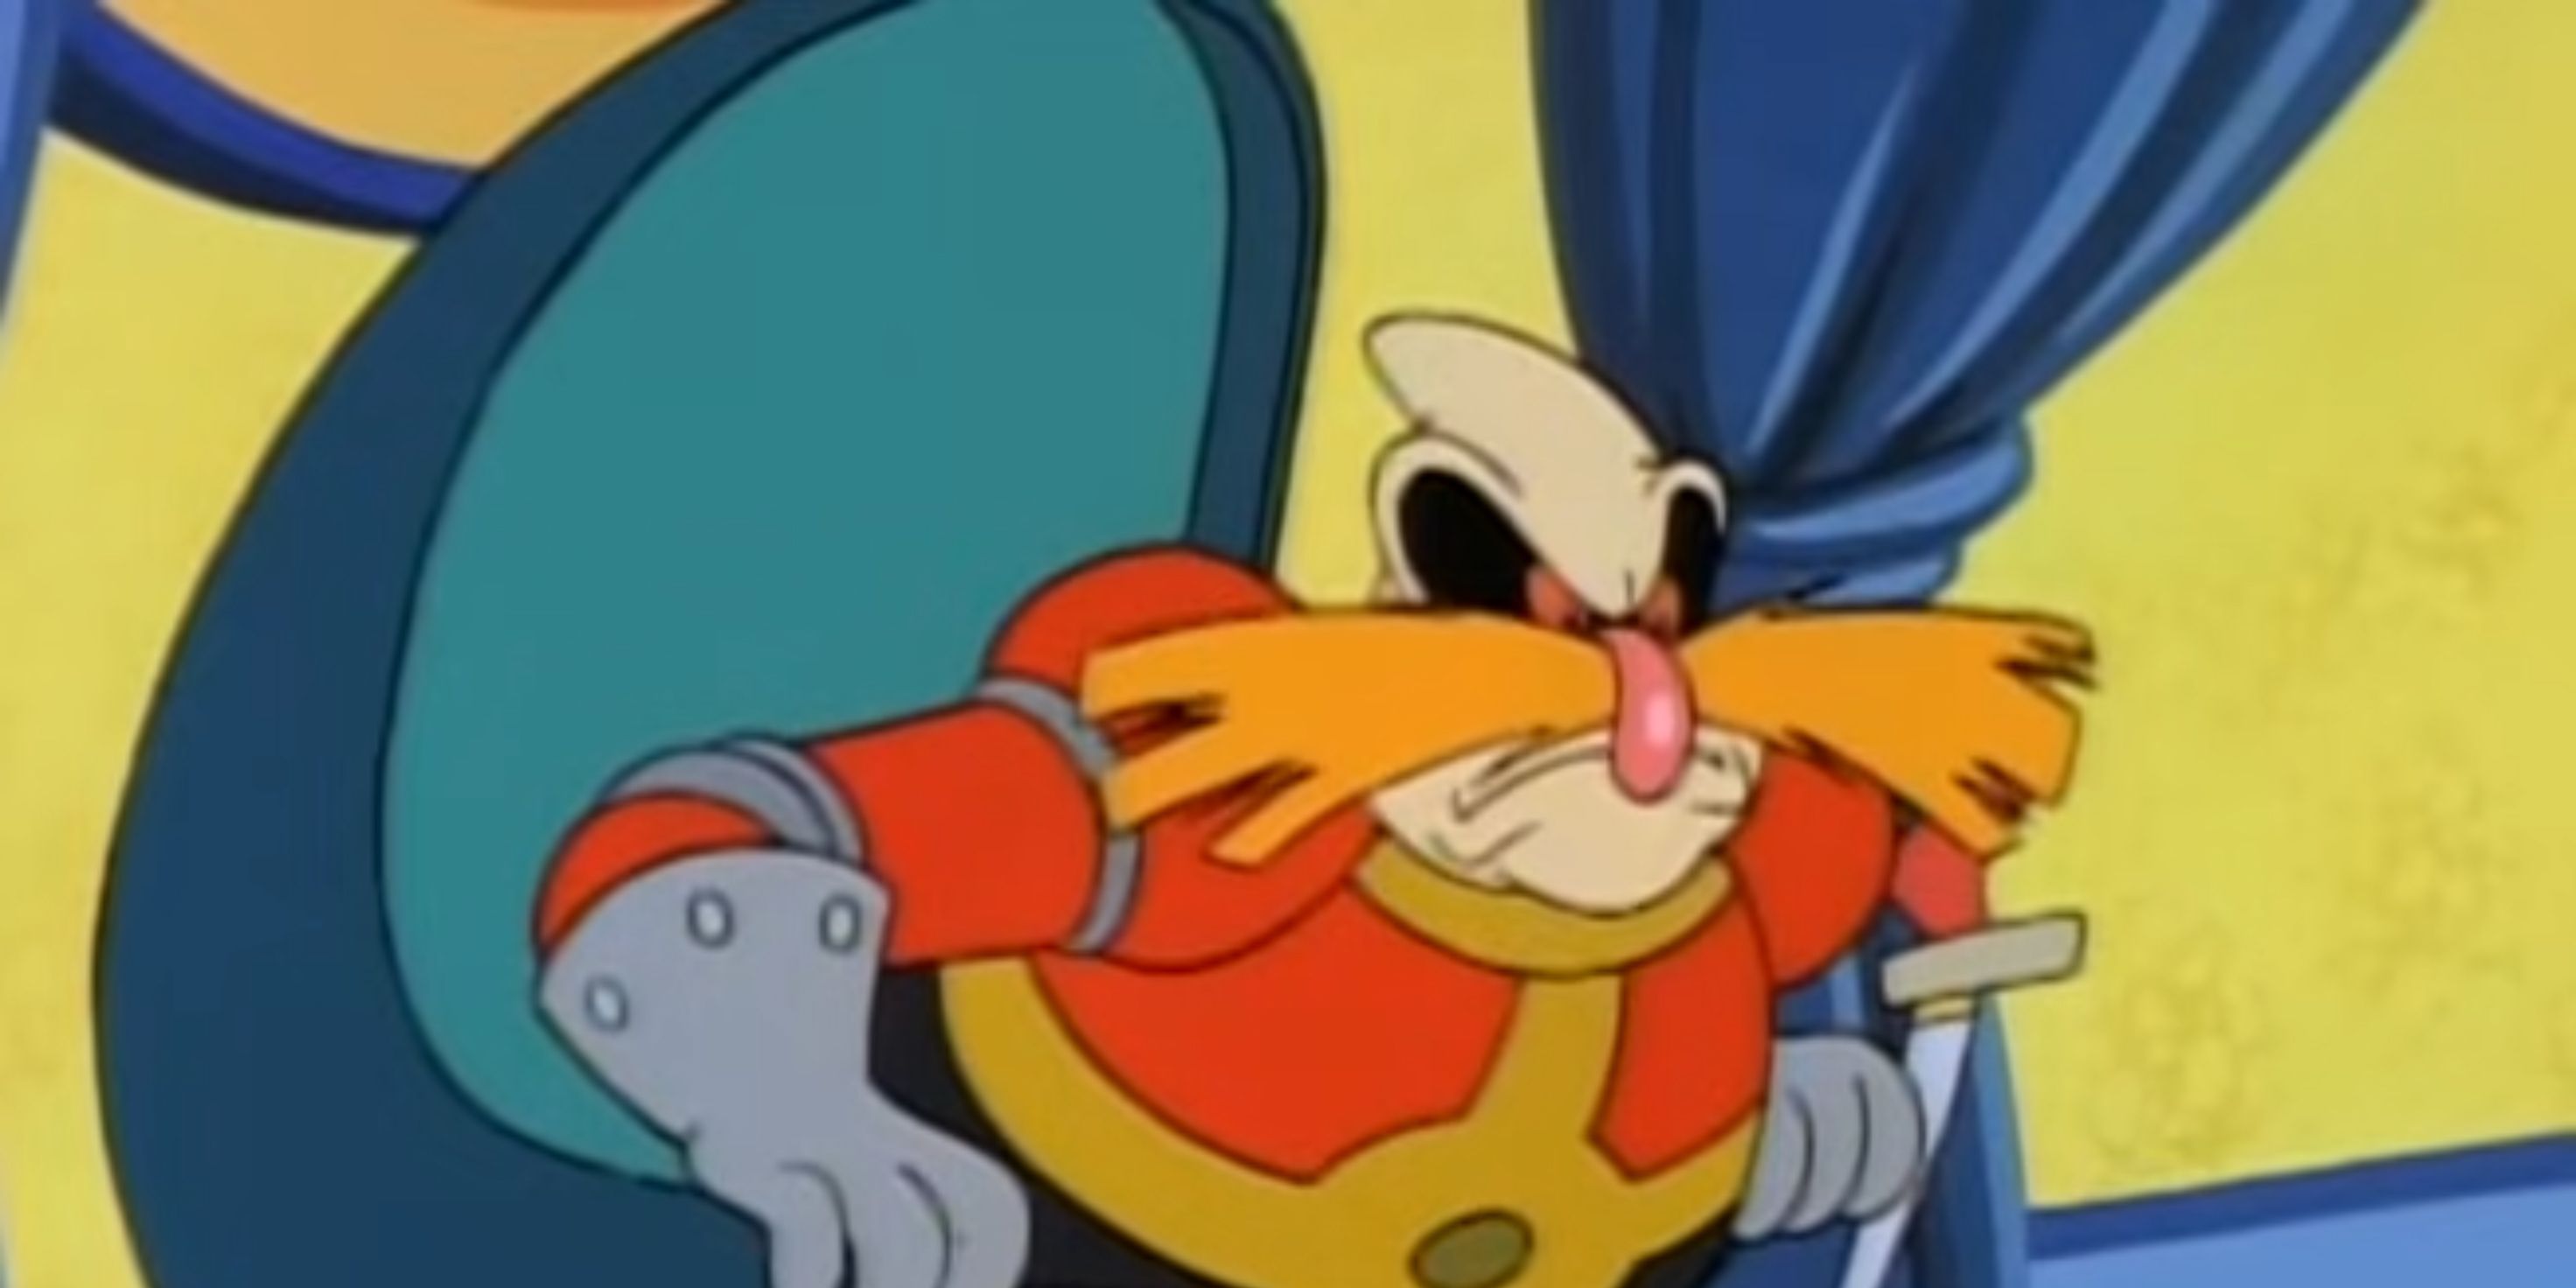 Dr. Robotnik in Adventures of Sonic the Hedgehog (1992)